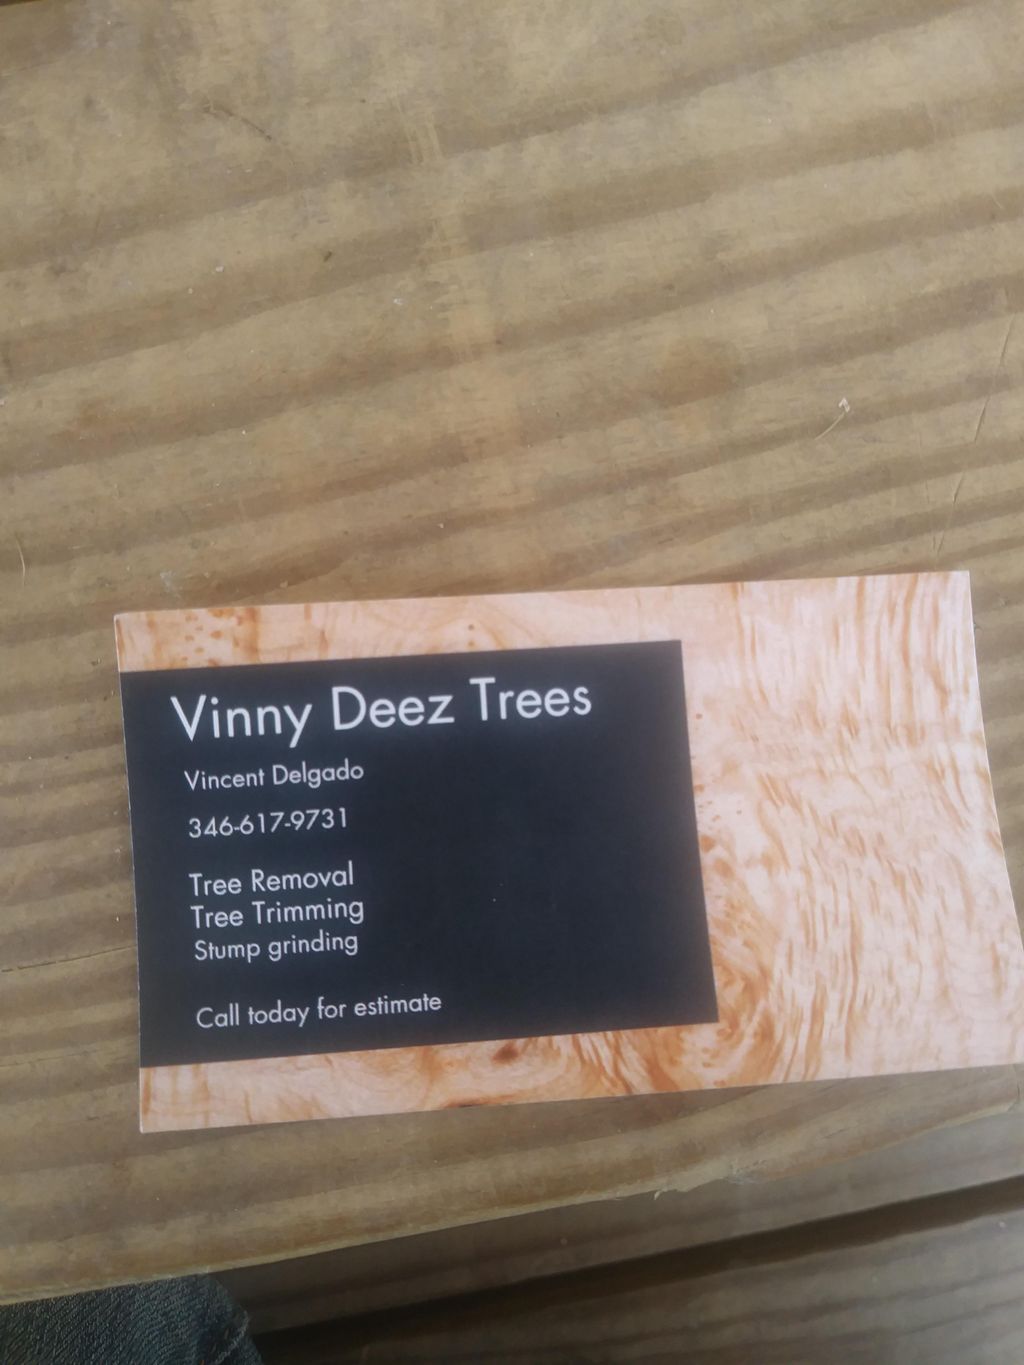 Vinny Deez Trees